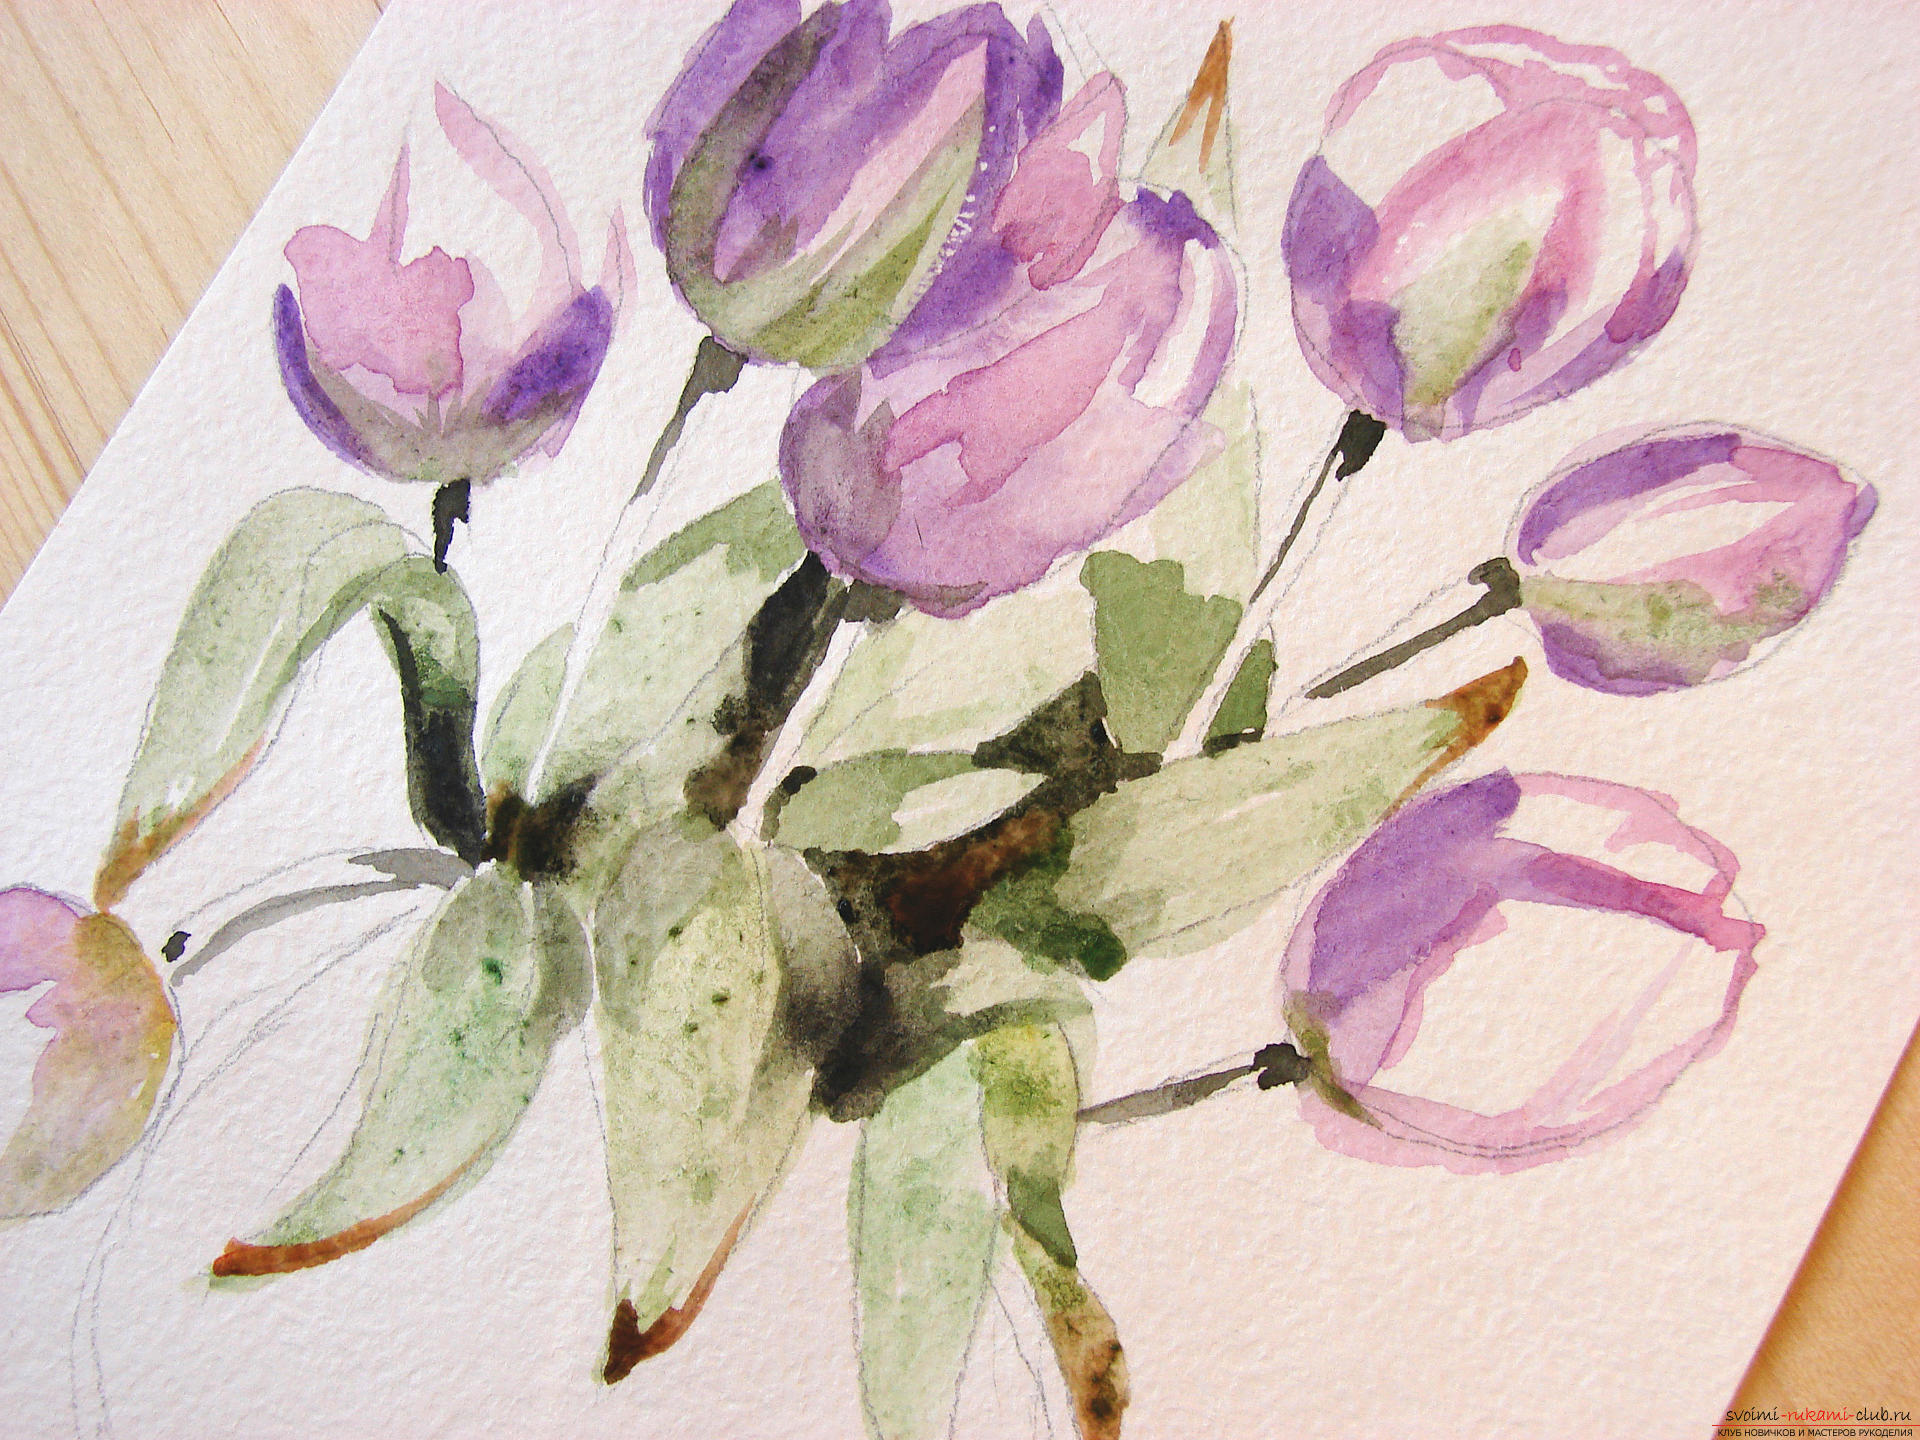 Мастер-класс по рисованию с фото научит как нарисовать цветы, подробно описав как рисуются тюльпаны поэтапно.. Фото №10